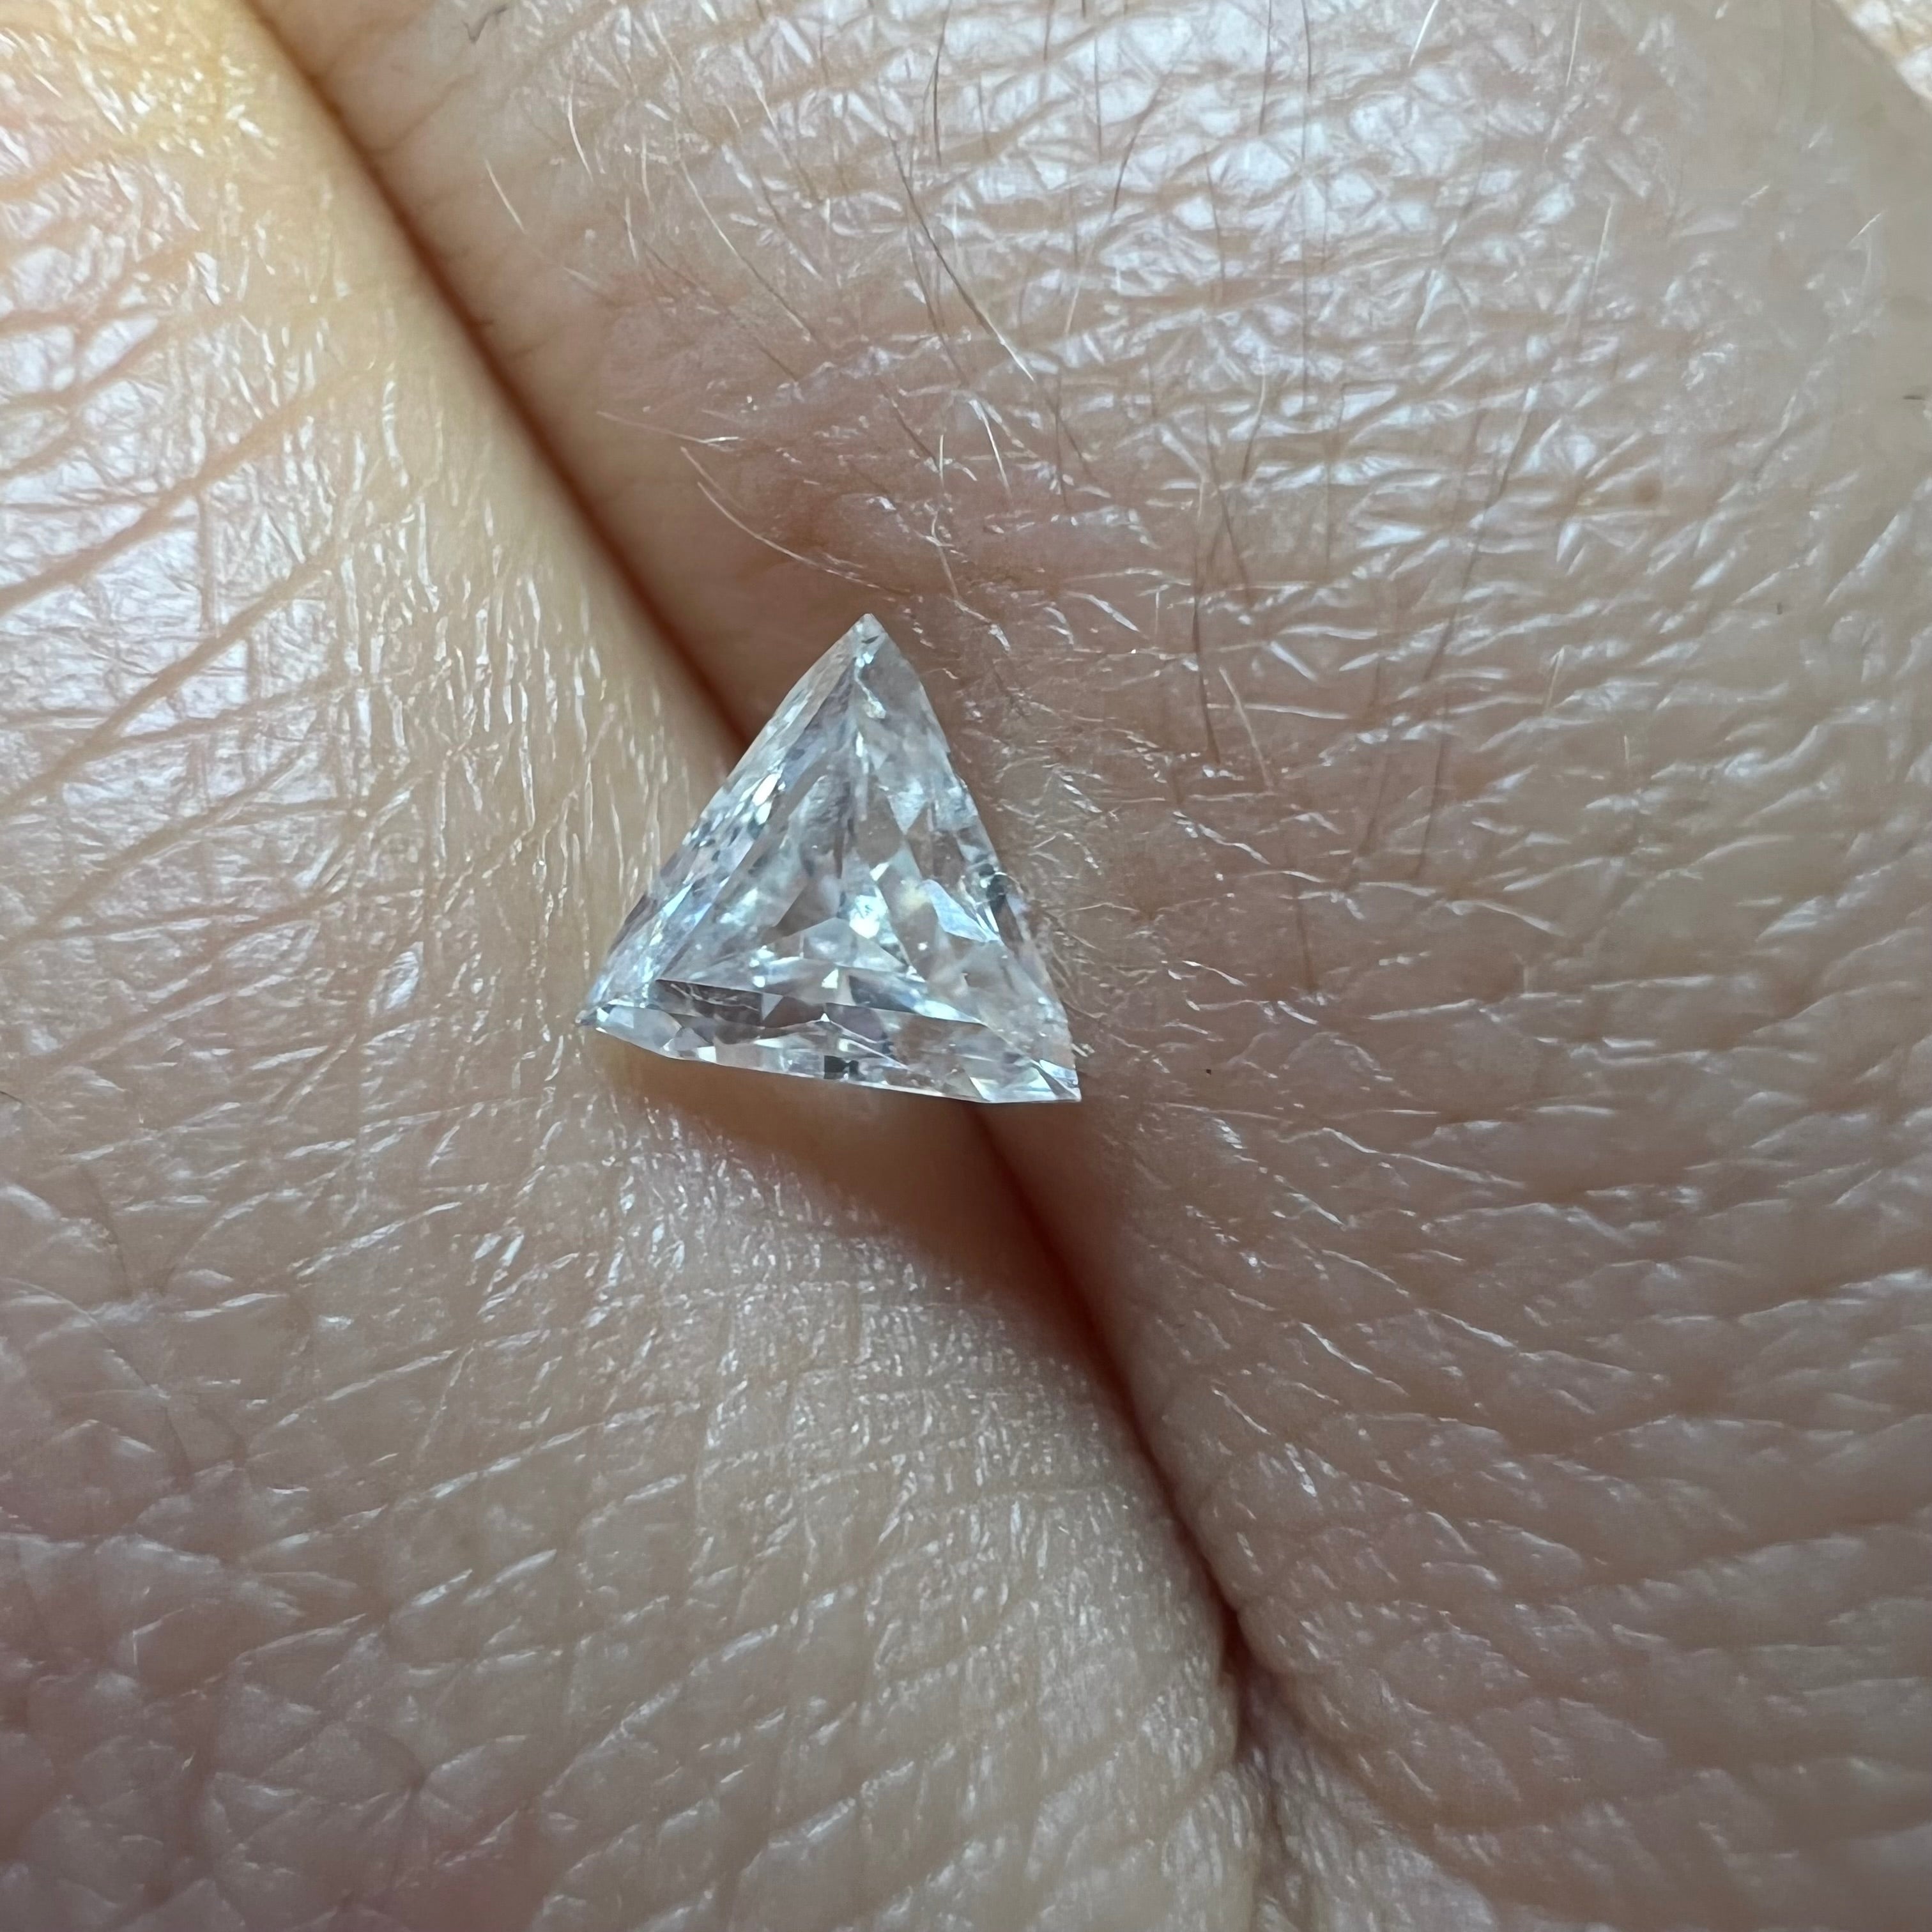 .57CT Trillion Cut Diamond G VS2 5.37x5.10x2.82mm Natural Earth mined